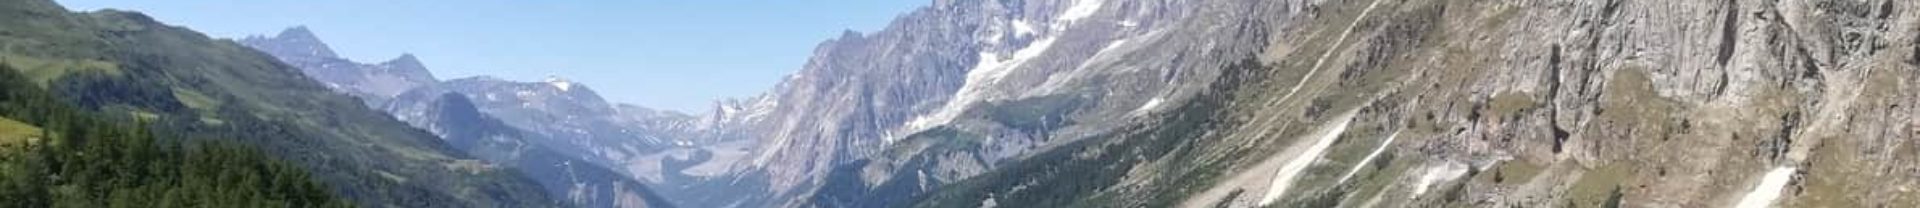 Tour del Monte Bianco